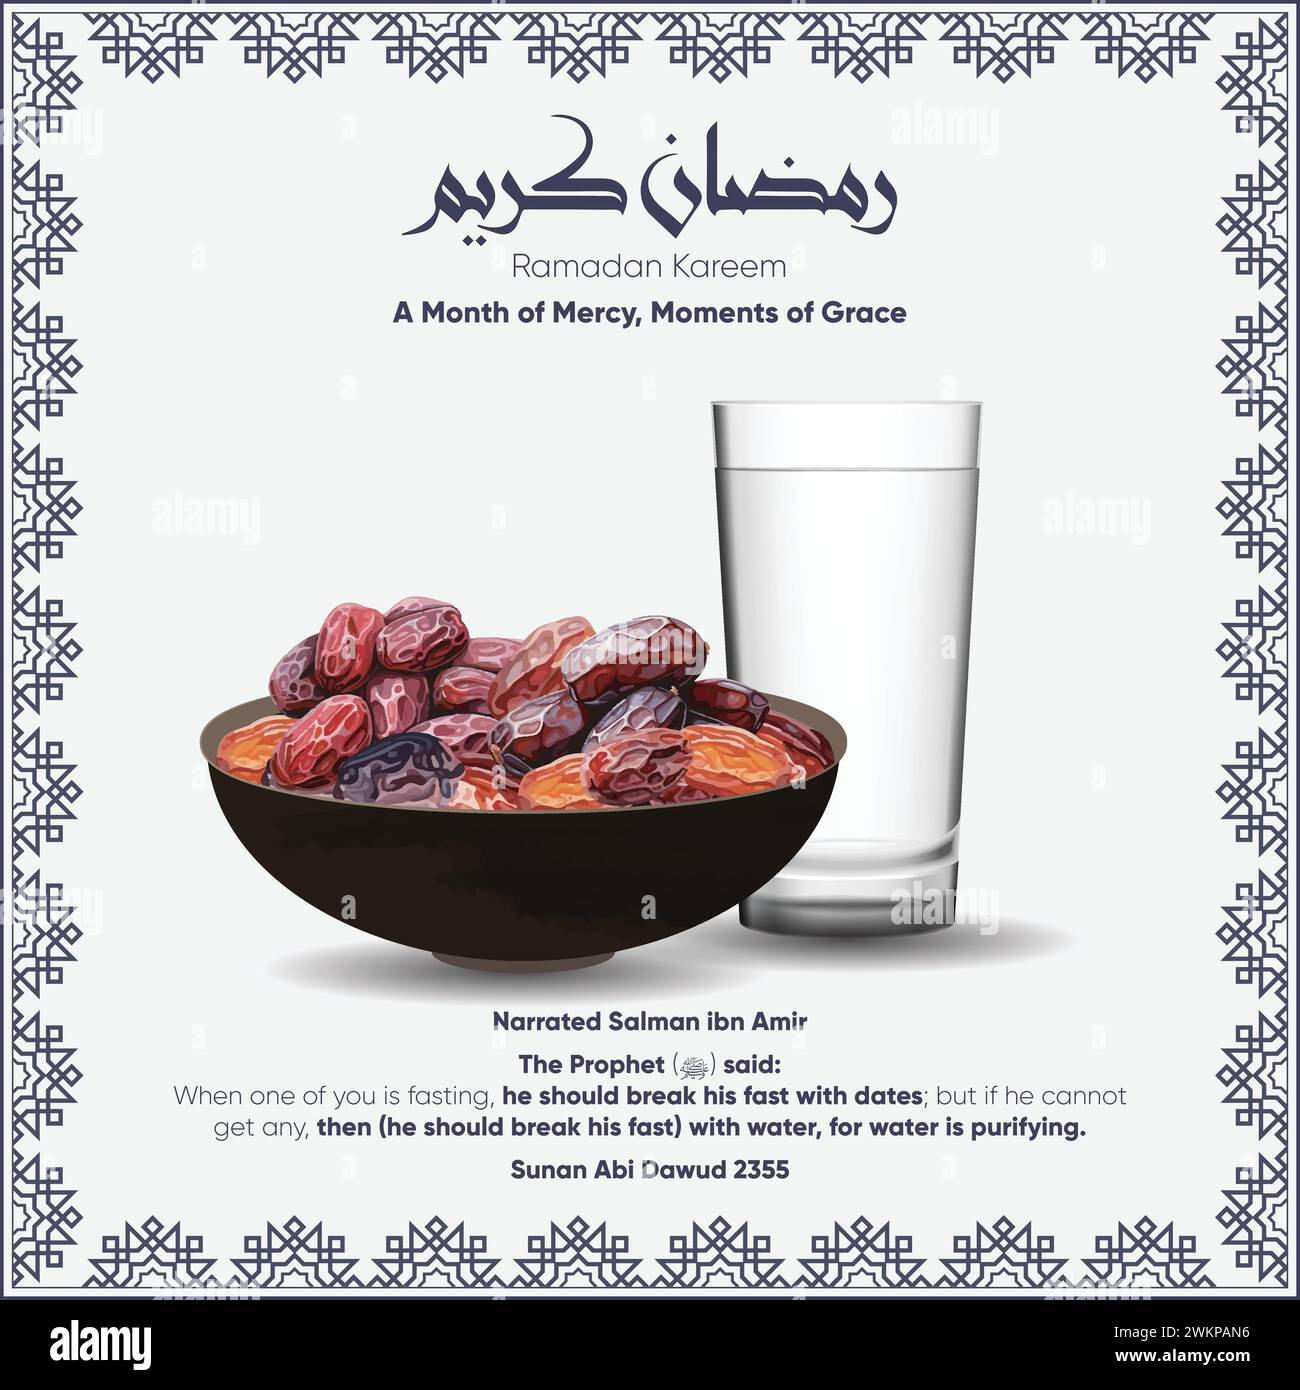 Poster minimalista Ramadan Kareem Iftar decorato con un bicchiere d'acqua e datteri illustrati. L'illustrazione include l'hadith sulla rottura veloce. Illustrazione Vettoriale